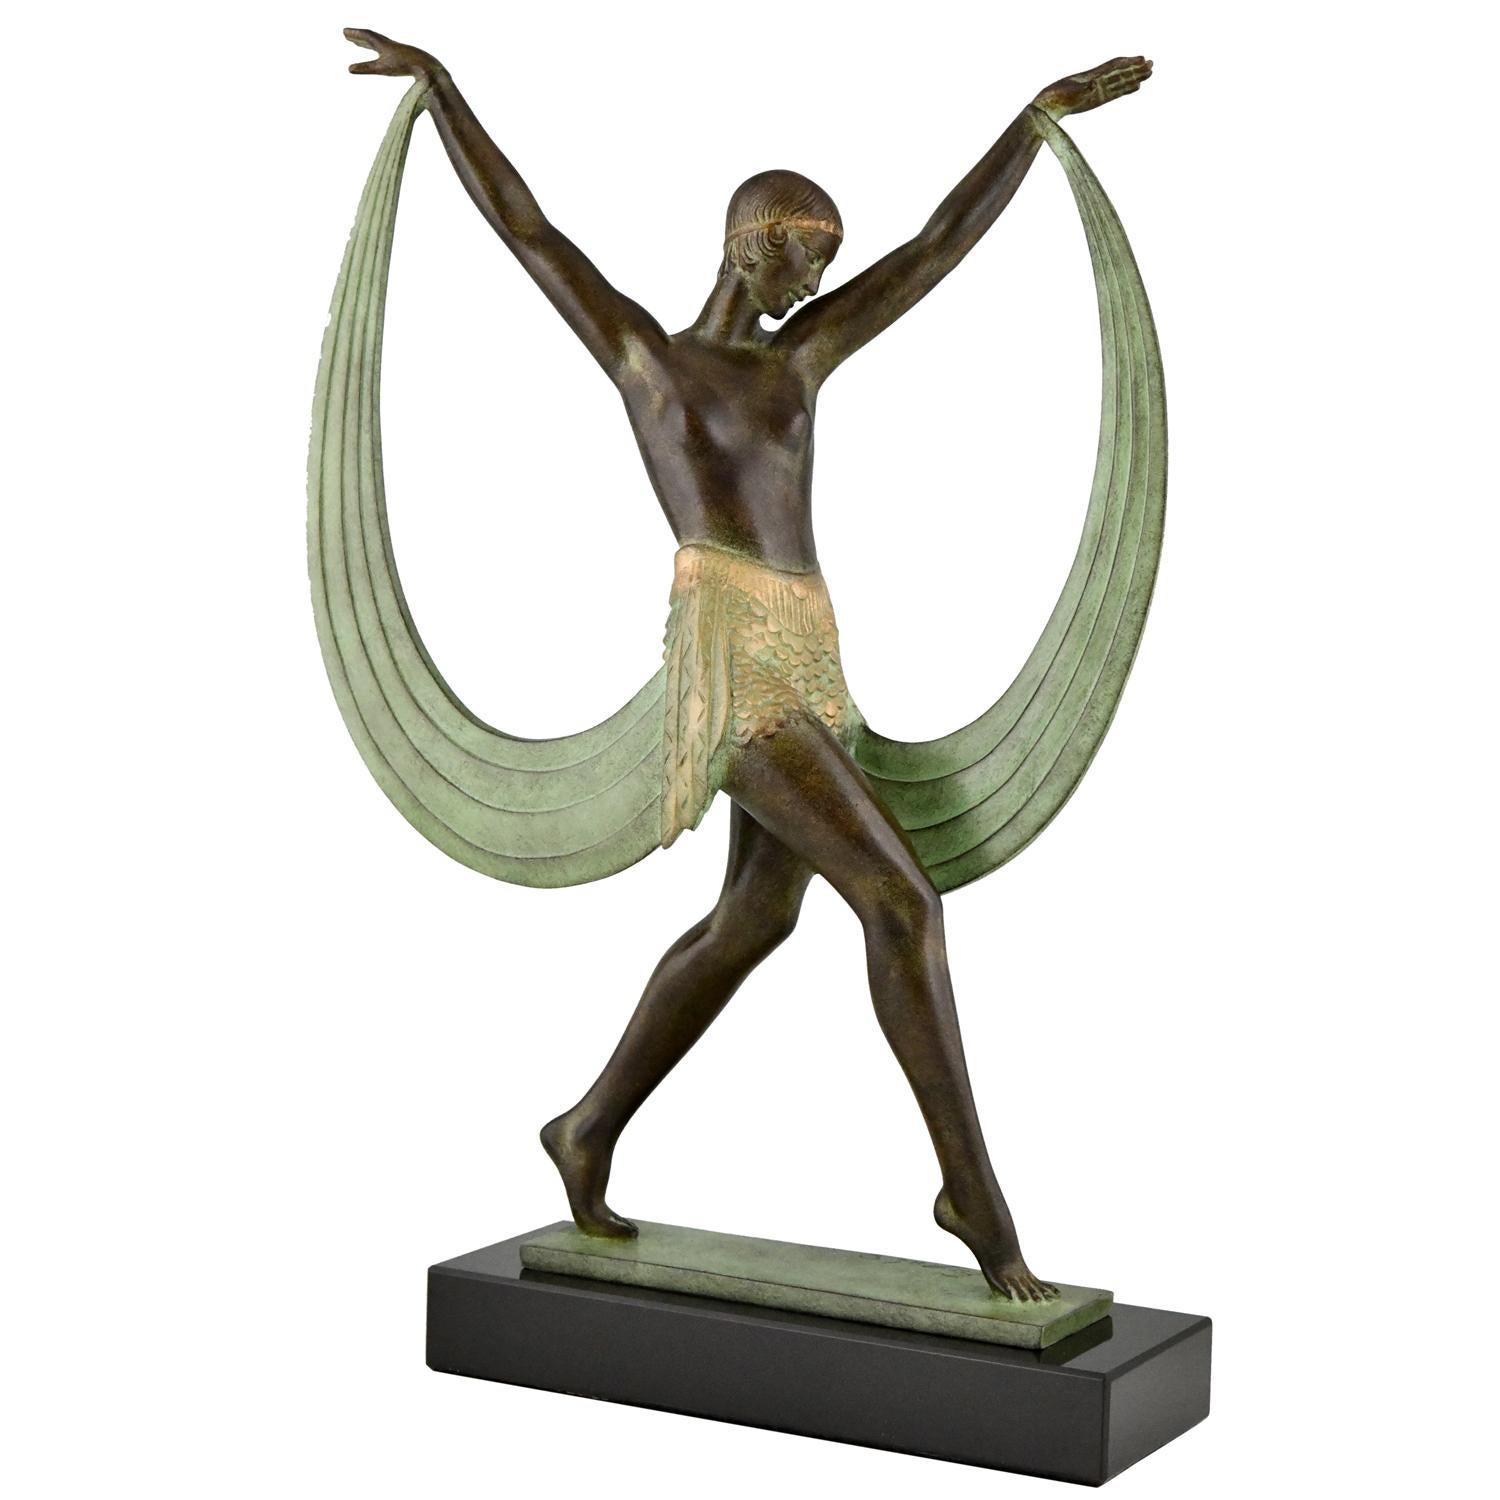 Art Deco Style Sculpture of a Dancer Lysis, Pierre Le Faguays for Max Le Verrier